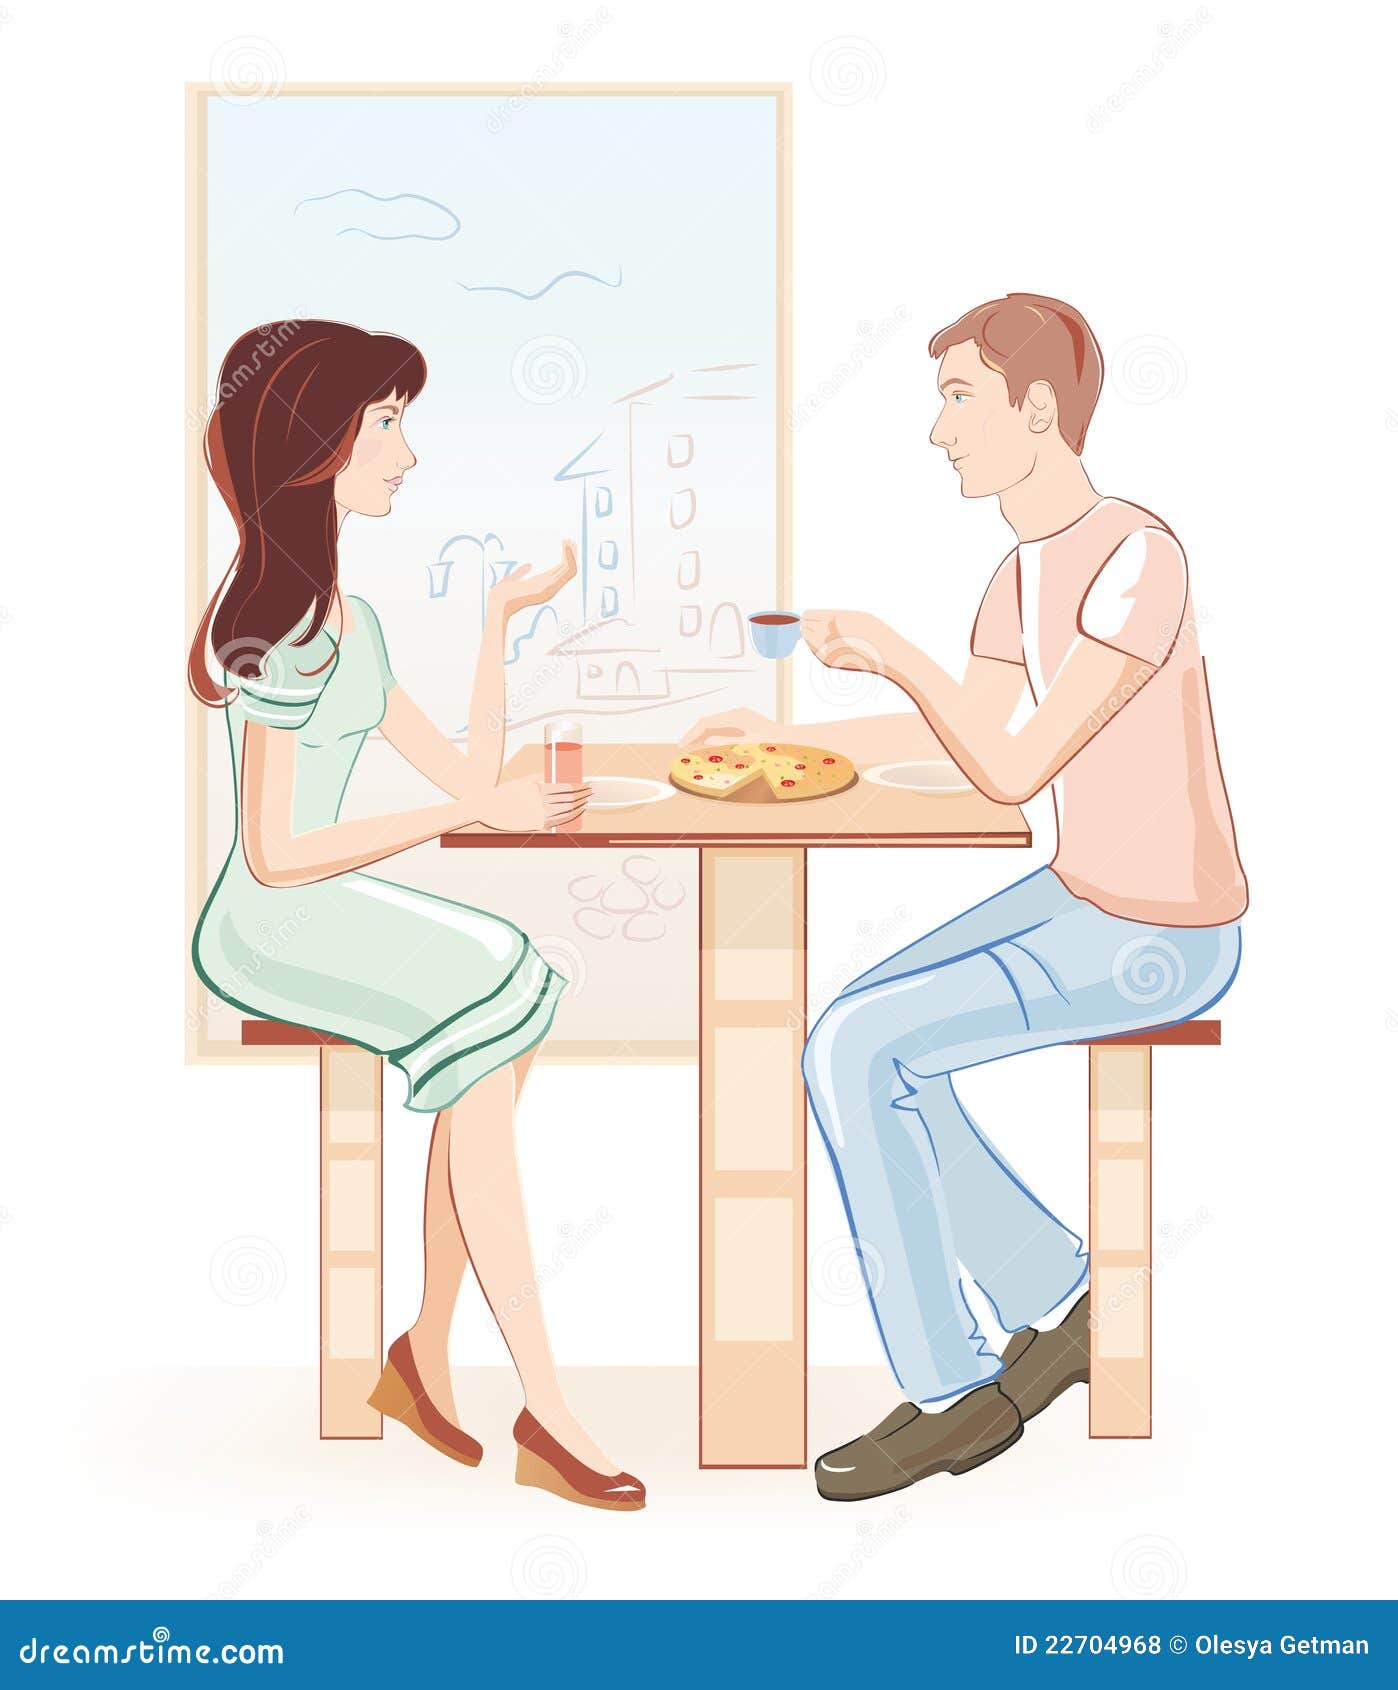 reisen dating cafe reddit gode dating hjemmesider